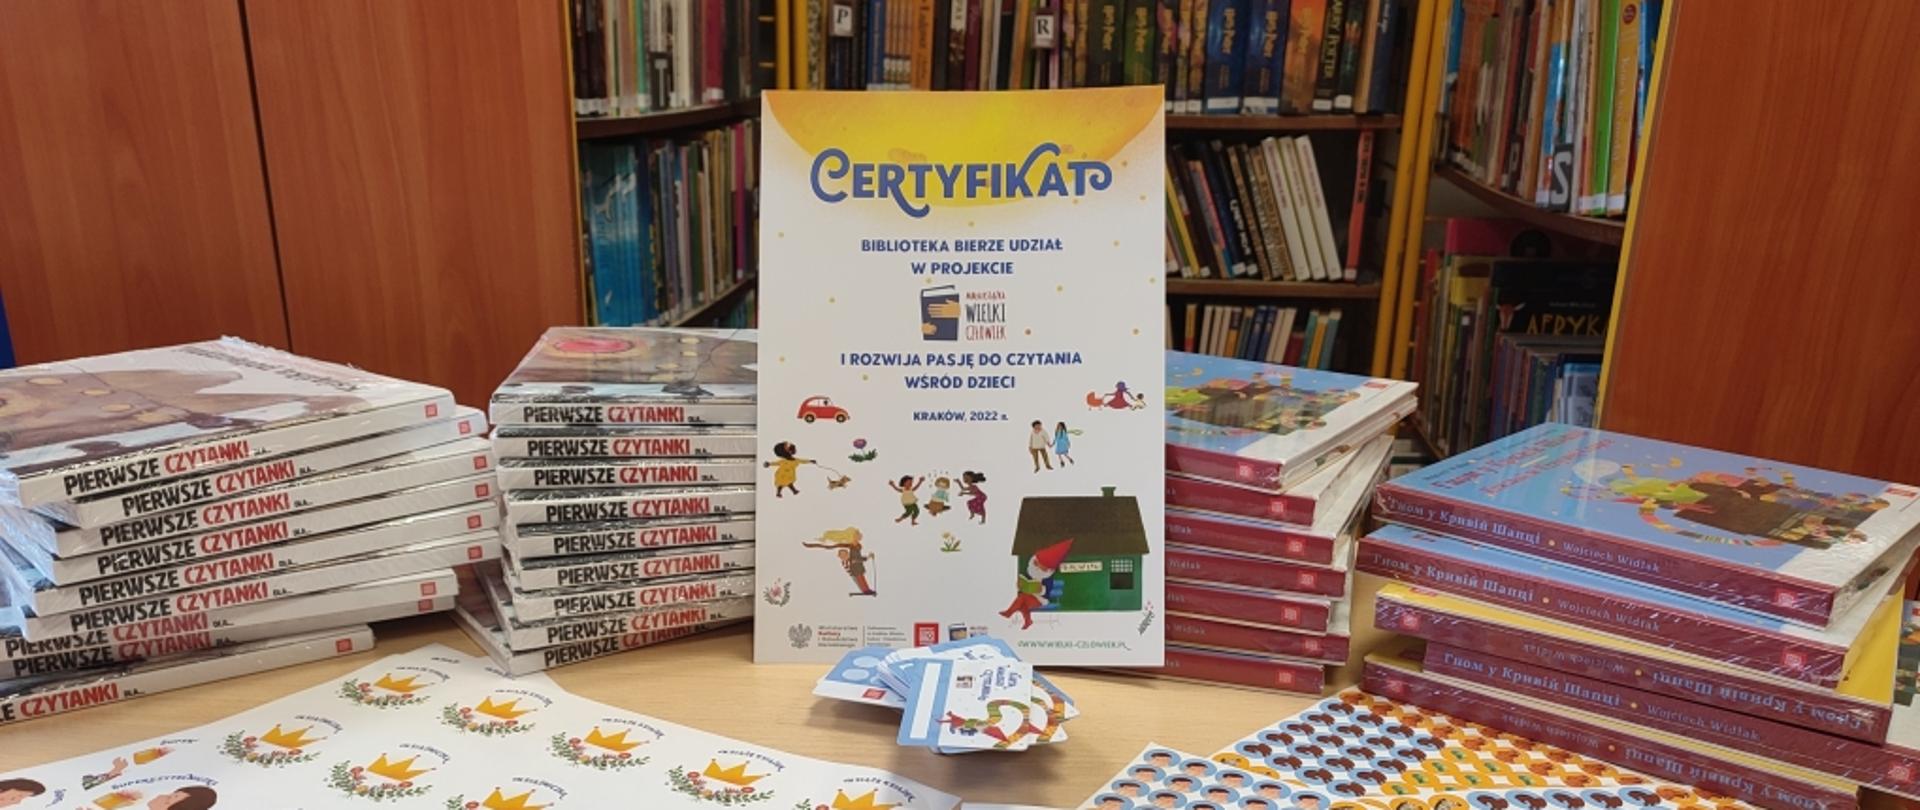 Książki dla dzieci, naklejki i certyfikat udziału w projekcie